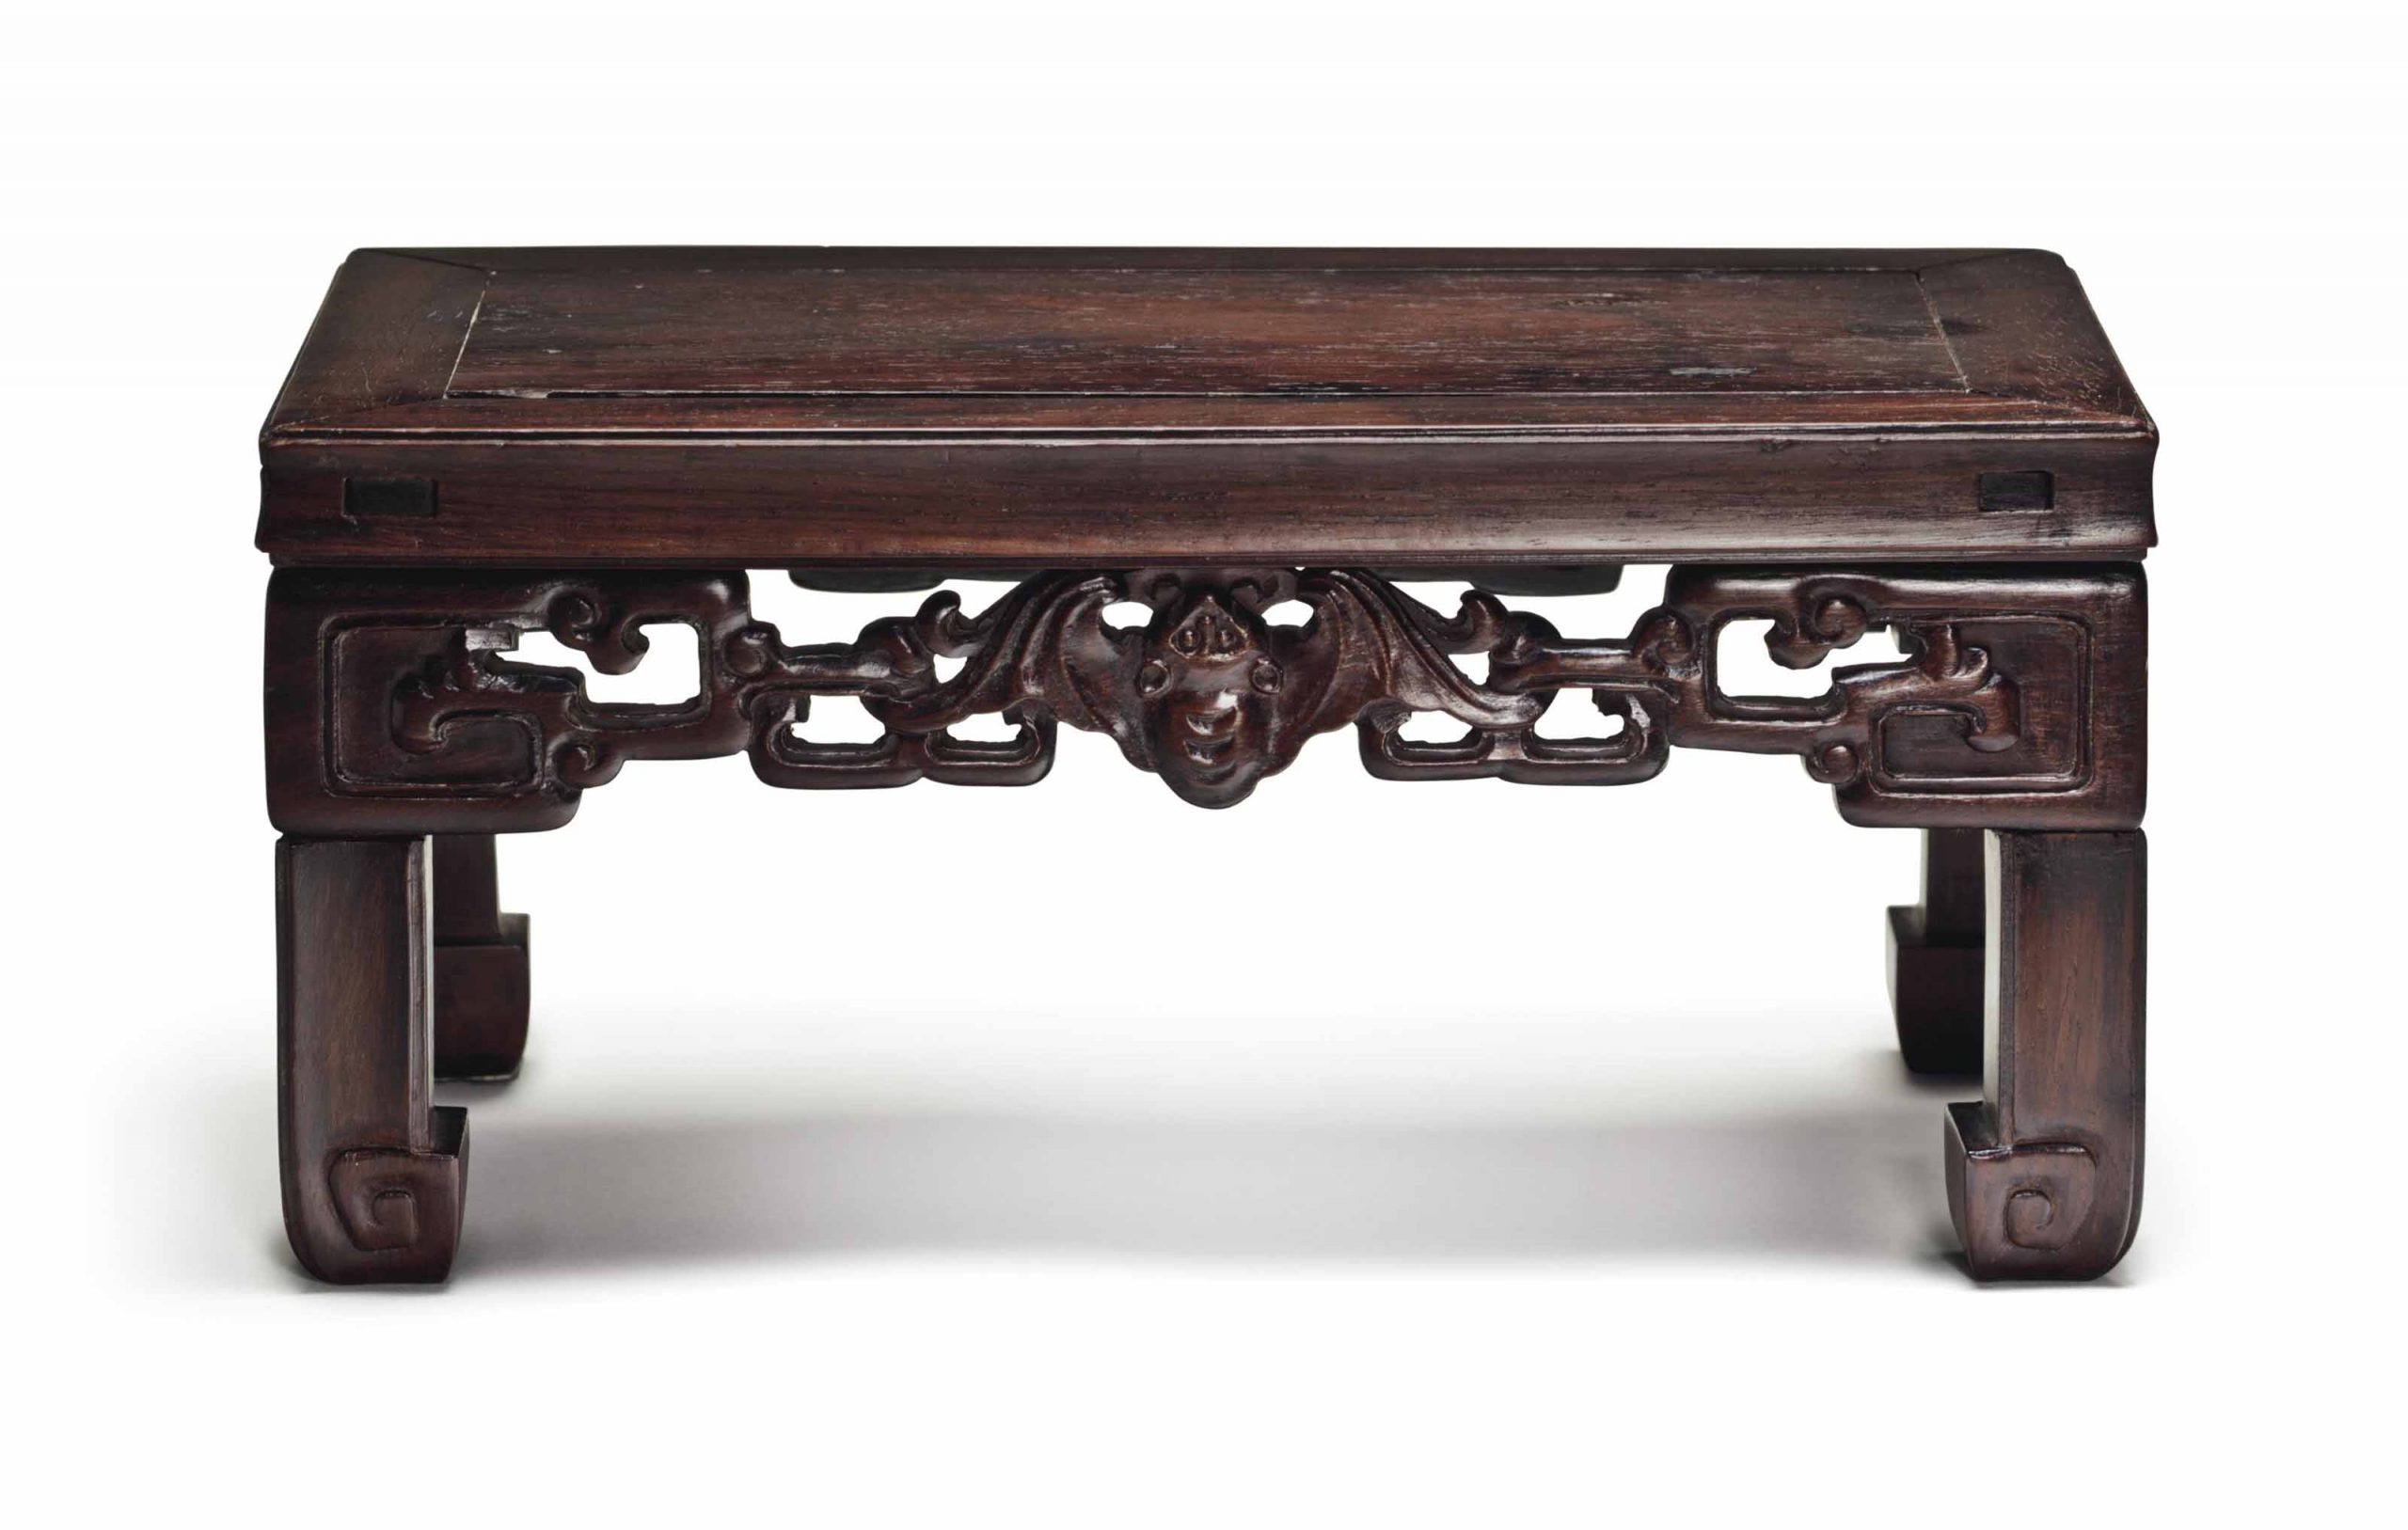 清十九世紀 紅木鏤雕雲蝠紋條桌式座